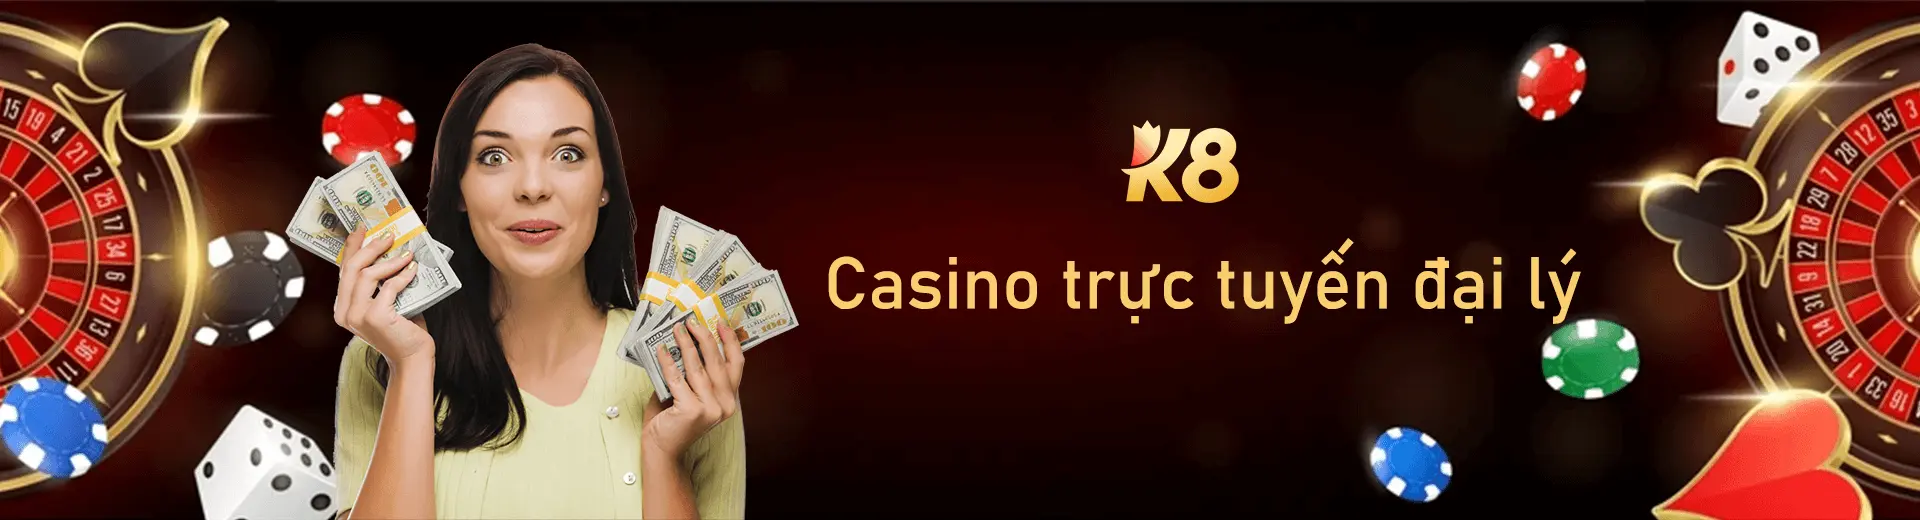 Casino trực tuyến đại lý K8 Banner